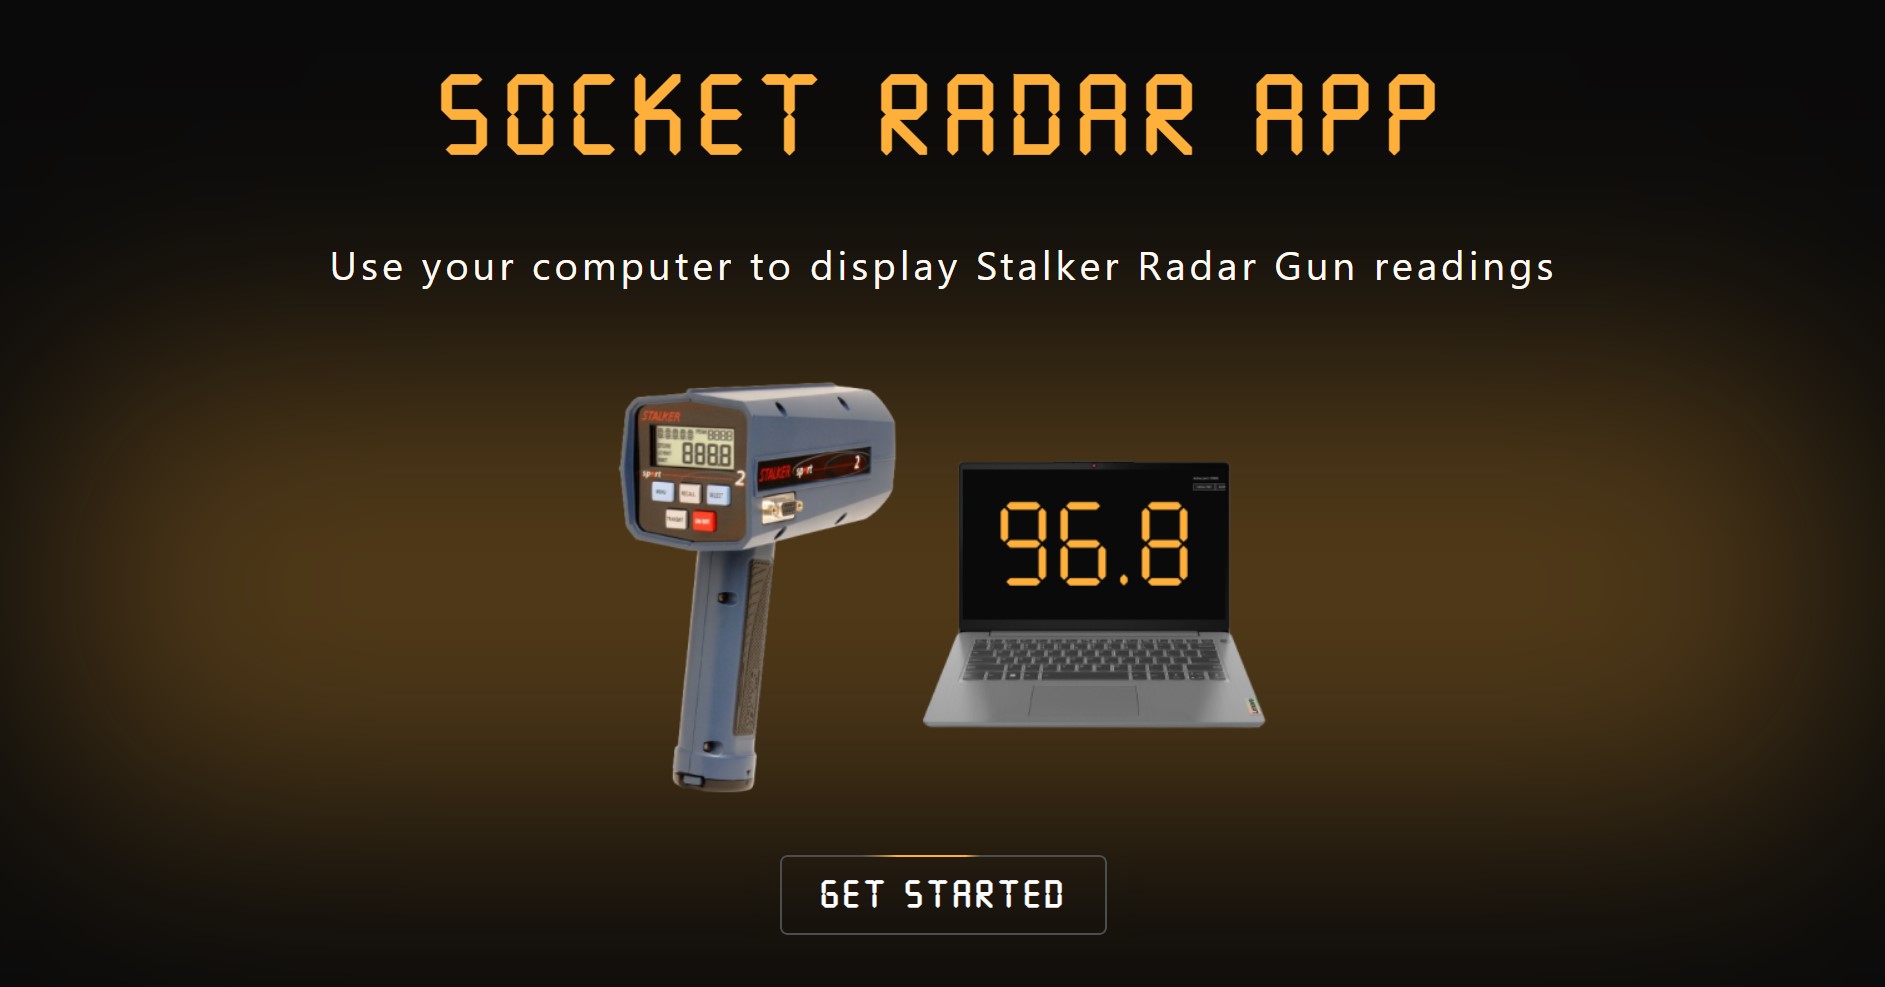 Socket Radar